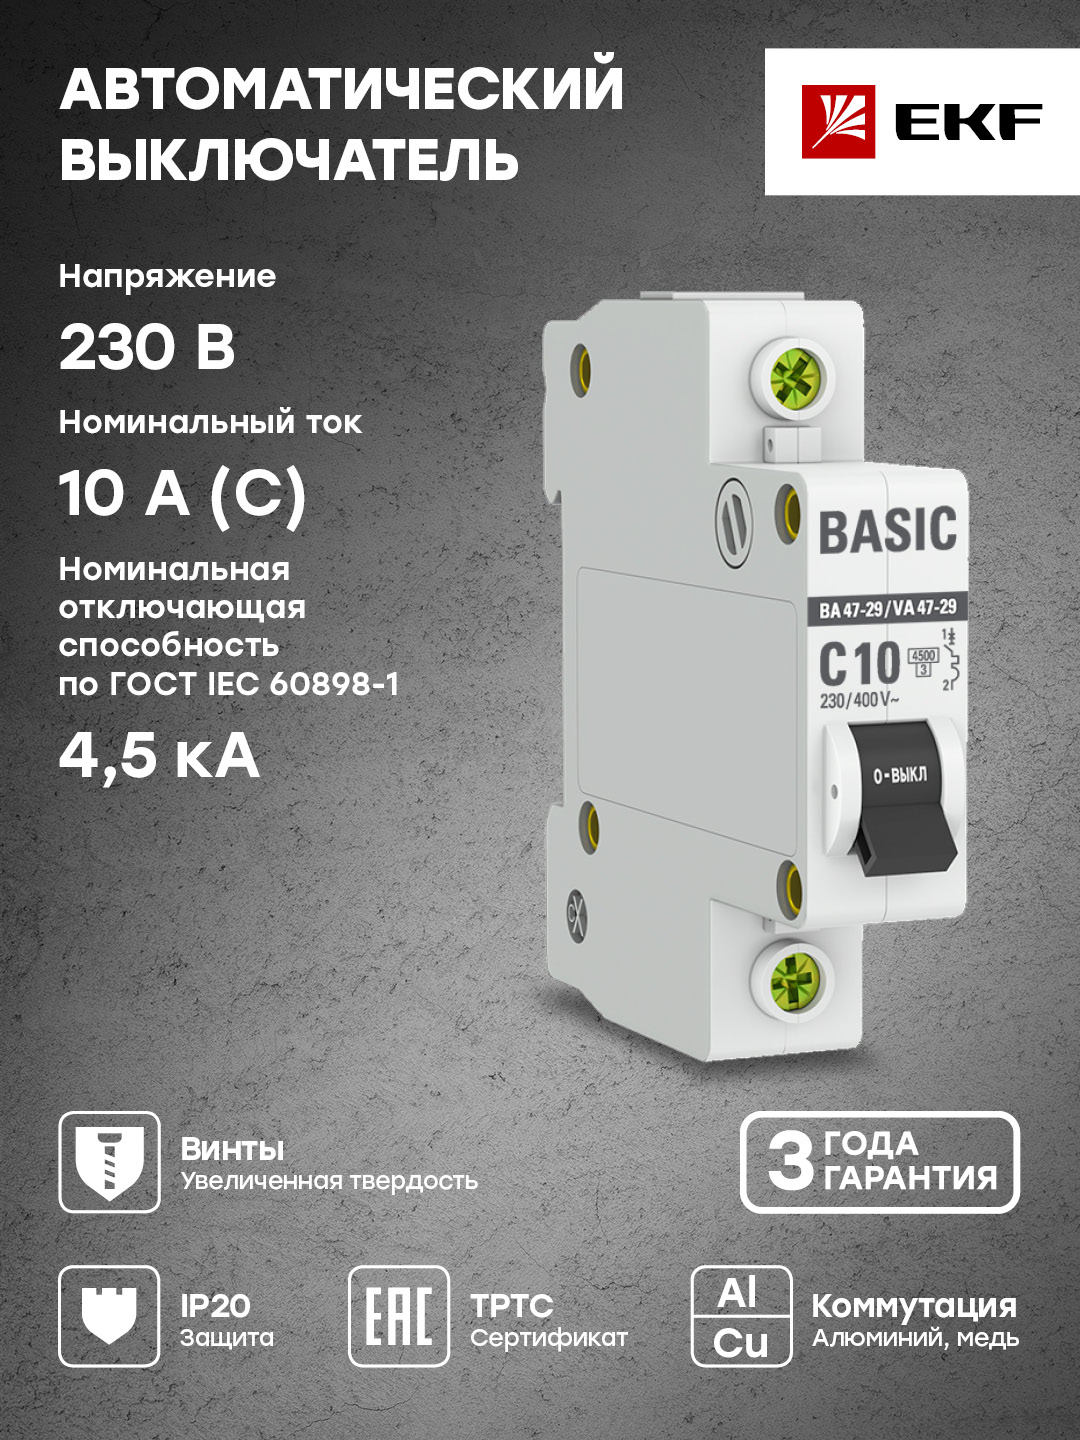 Выключатель автоматический EKF Basic ВА 47-29 mcb4729-1-10C 1P, 10А (C), 4,5кА - купить в Мегамаркет Москва Пушкино, цена на Мегамаркет